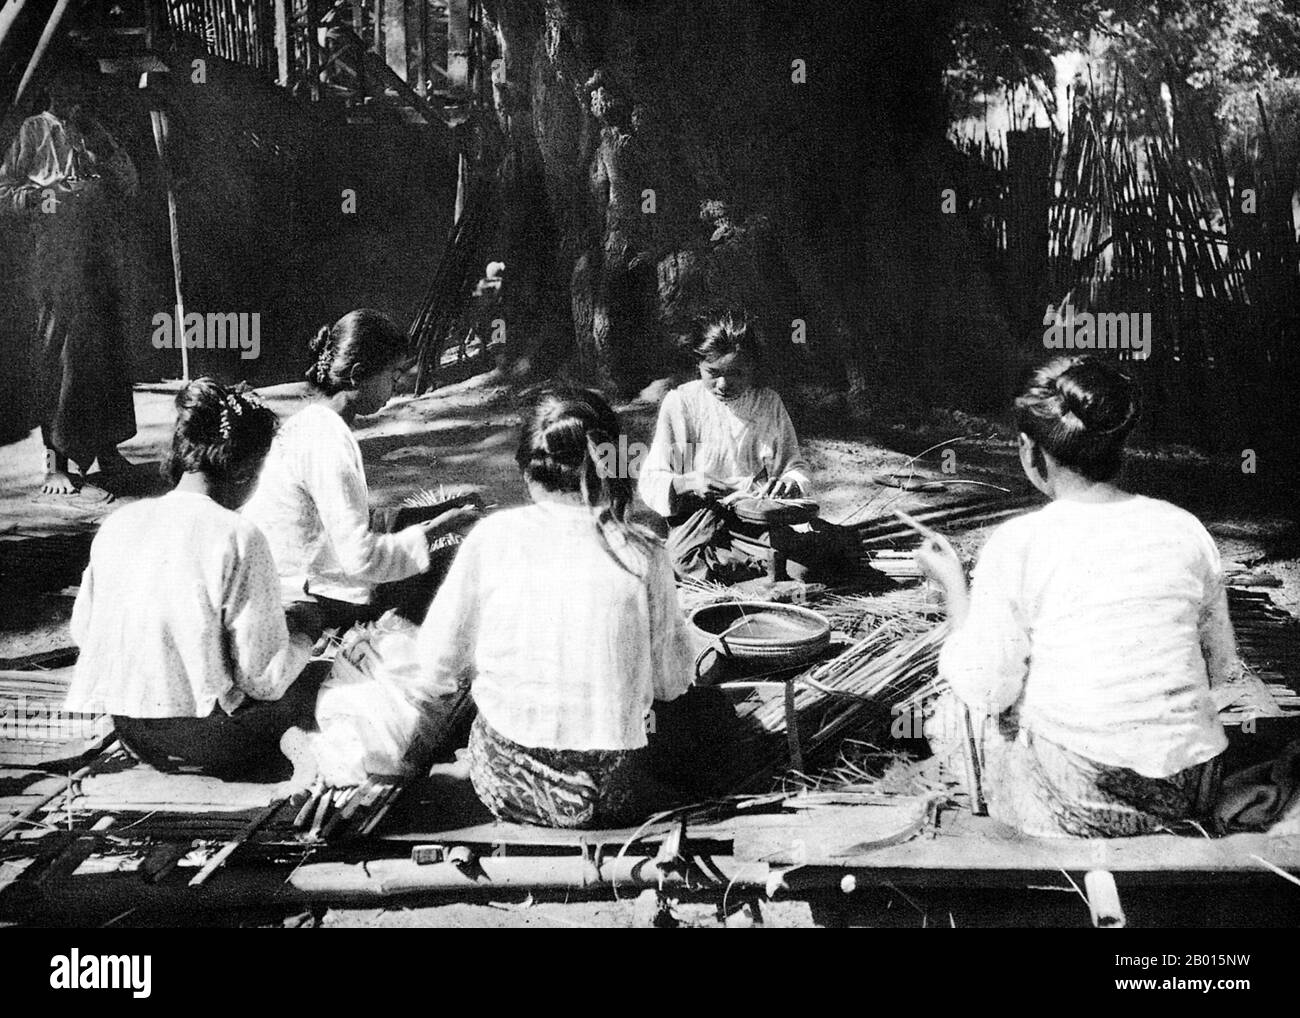 Birma/Myanmar: Frauen stellen in Pagan, Zentral-Burma, c. 1920er Jahre. Lackwaren ist noch heute ein traditionelles Produkt in der heidnischen Region, da Lackharz aus einheimischen Bäumen gewonnen wird. Die britische Eroberung Burmas begann 1824 als Reaktion auf einen birmanischen Versuch, Indien zu erobern. Bis 1886 und nach zwei weiteren Kriegen hatte Großbritannien das ganze Land in den britischen Raj aufgenommen. Um den Handel anzukurbeln und Veränderungen zu erleichtern, brachten die Briten Inder und Chinesen, die die Burmesen schnell in städtische Gebiete verdrängten. Stockfoto